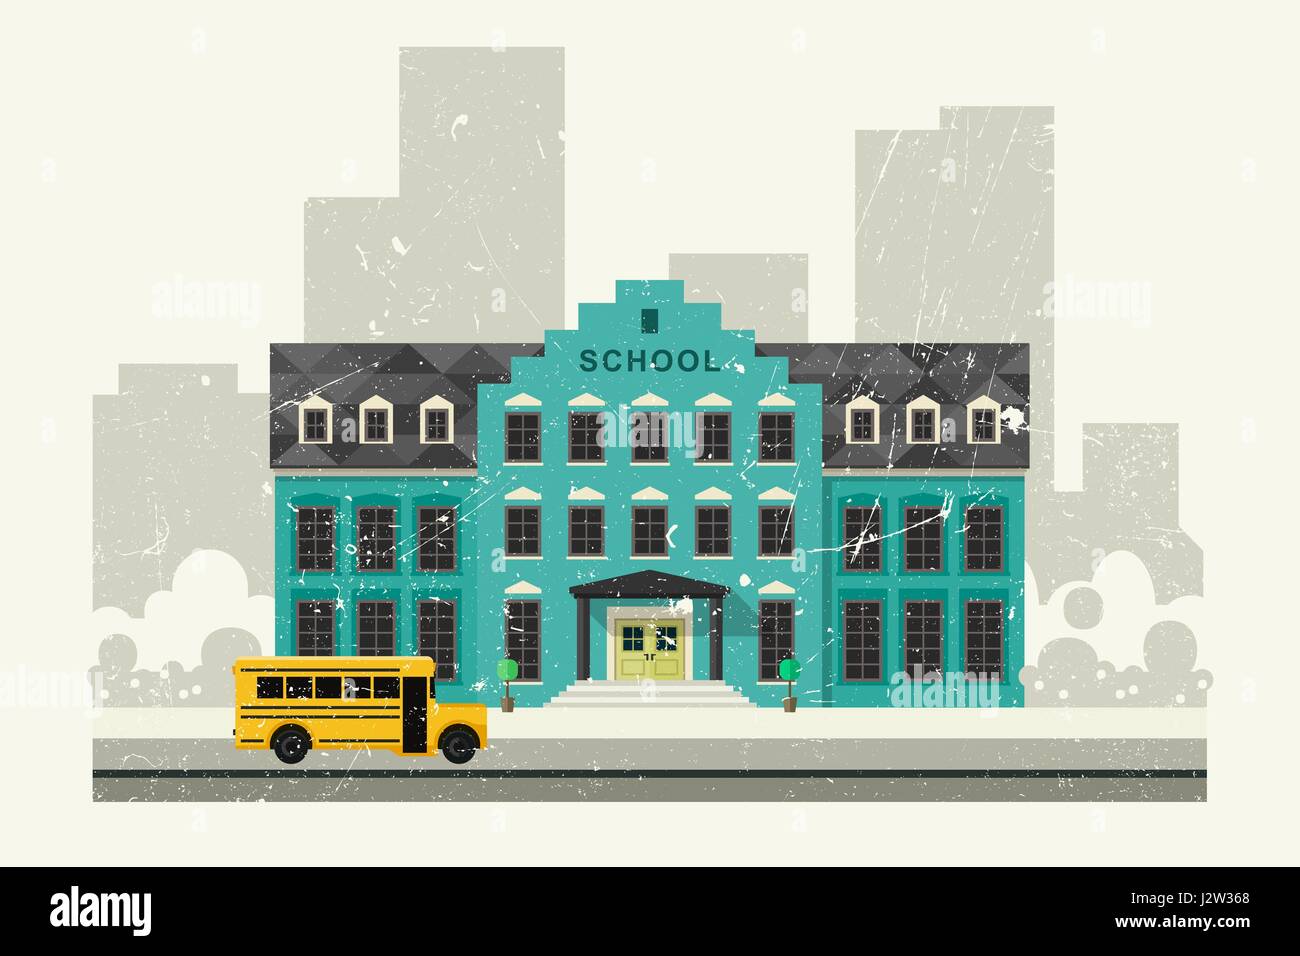 L'école et bus jaune Illustration de Vecteur